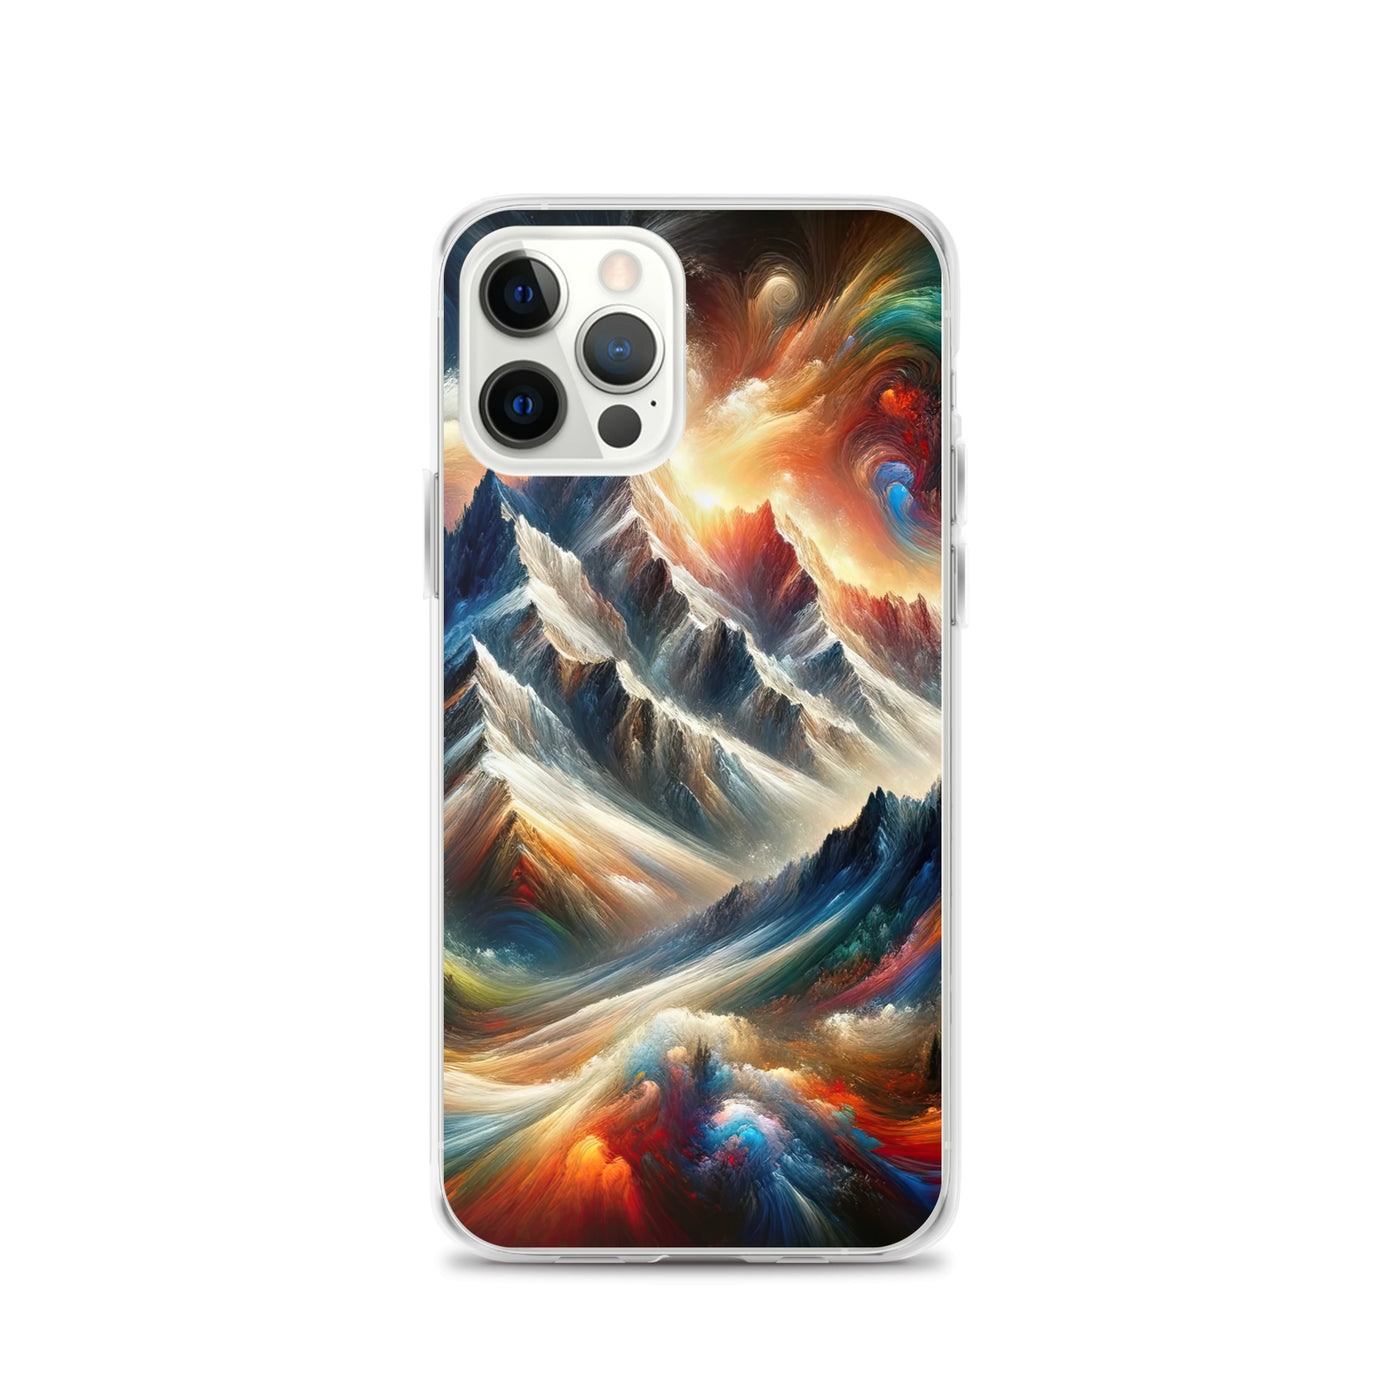 Expressionistische Alpen, Berge: Gemälde mit Farbexplosion - iPhone Schutzhülle (durchsichtig) berge xxx yyy zzz iPhone 12 Pro